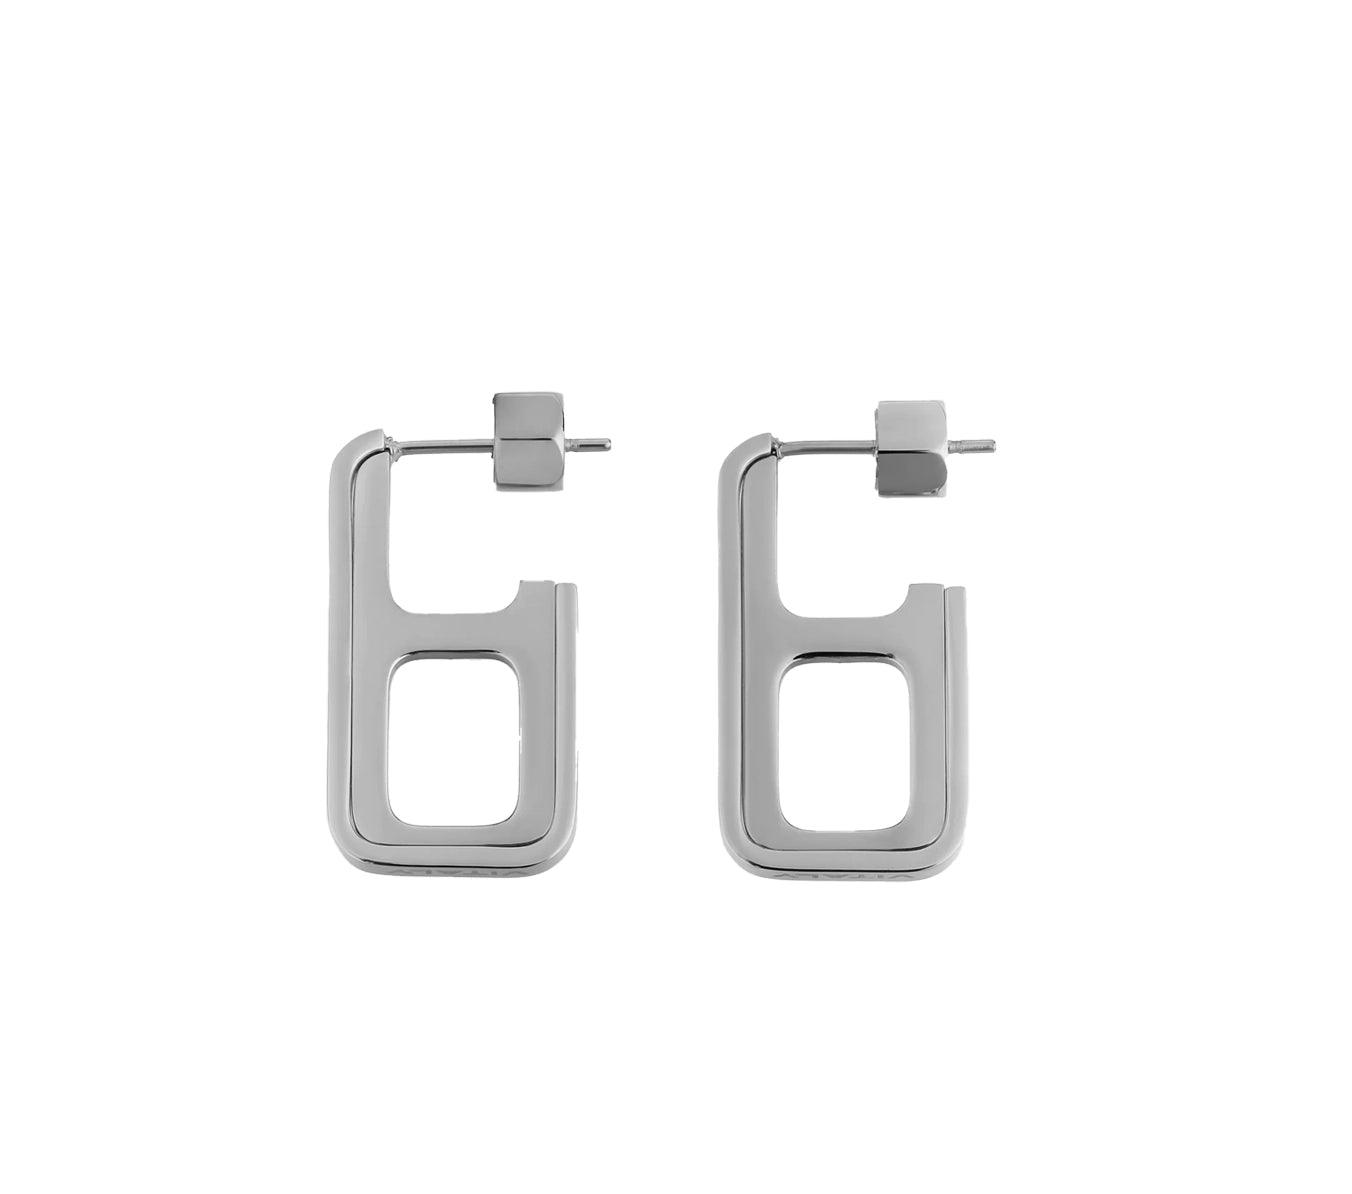 VITALY Fizz Stainless Steel Earrings - One size - Jewelry